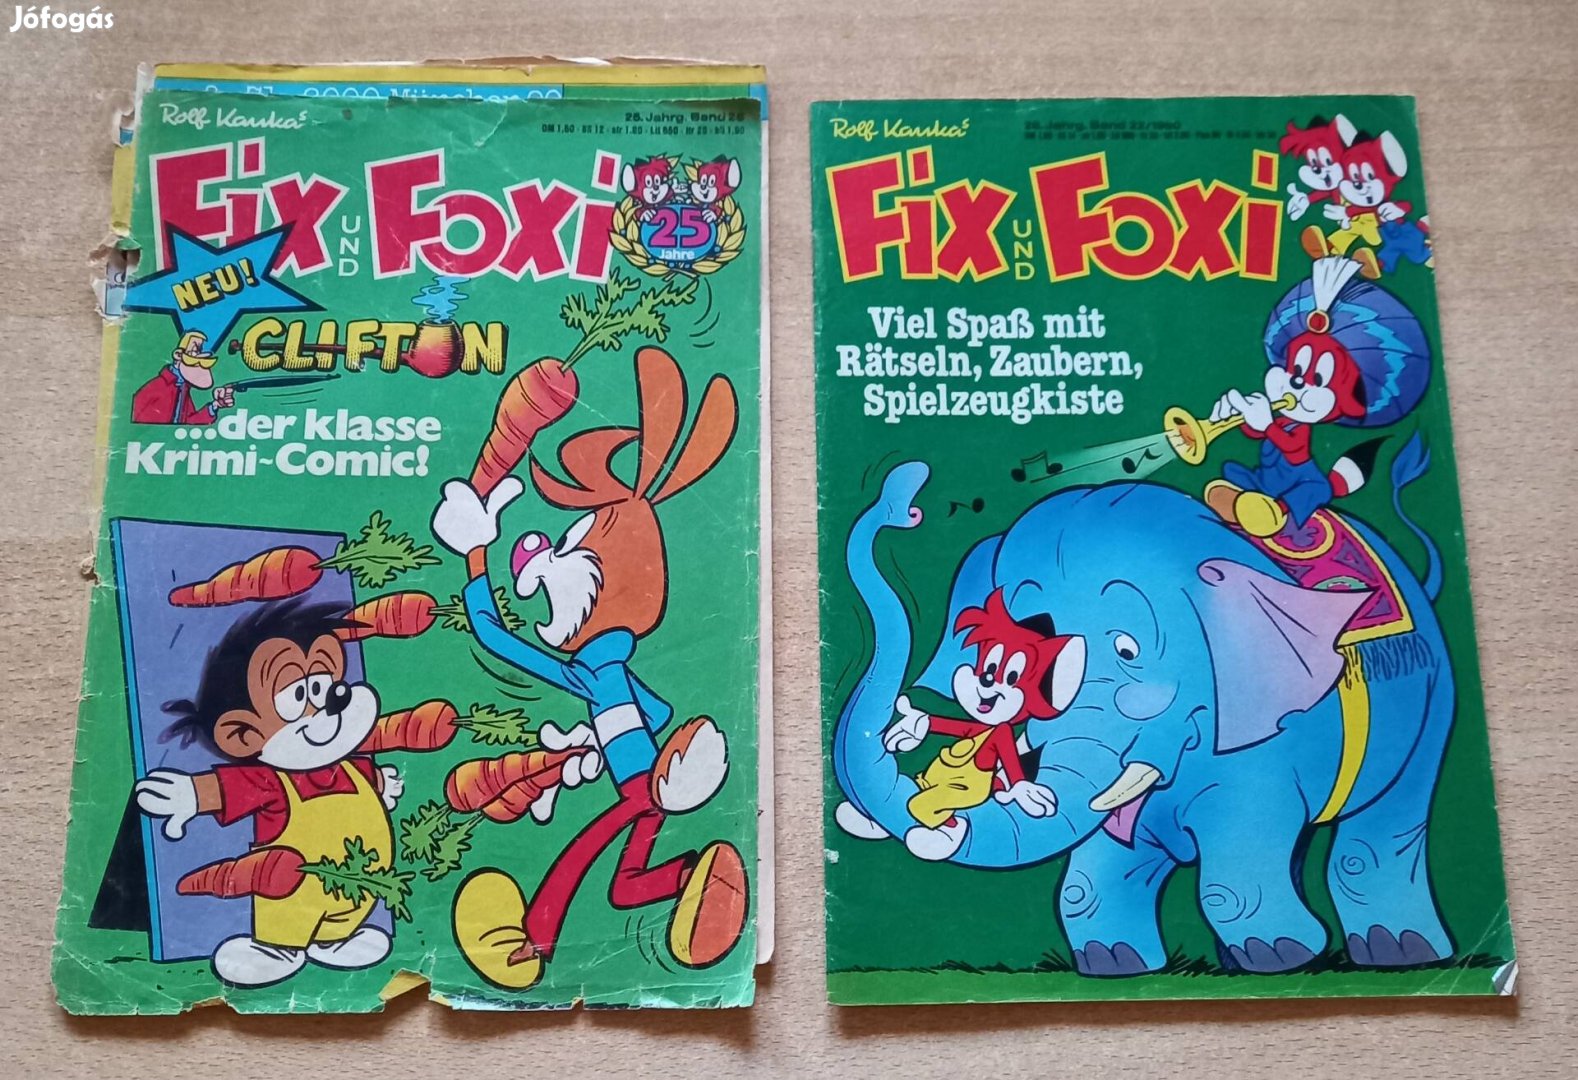 Retro Fix und Foxi képregények 